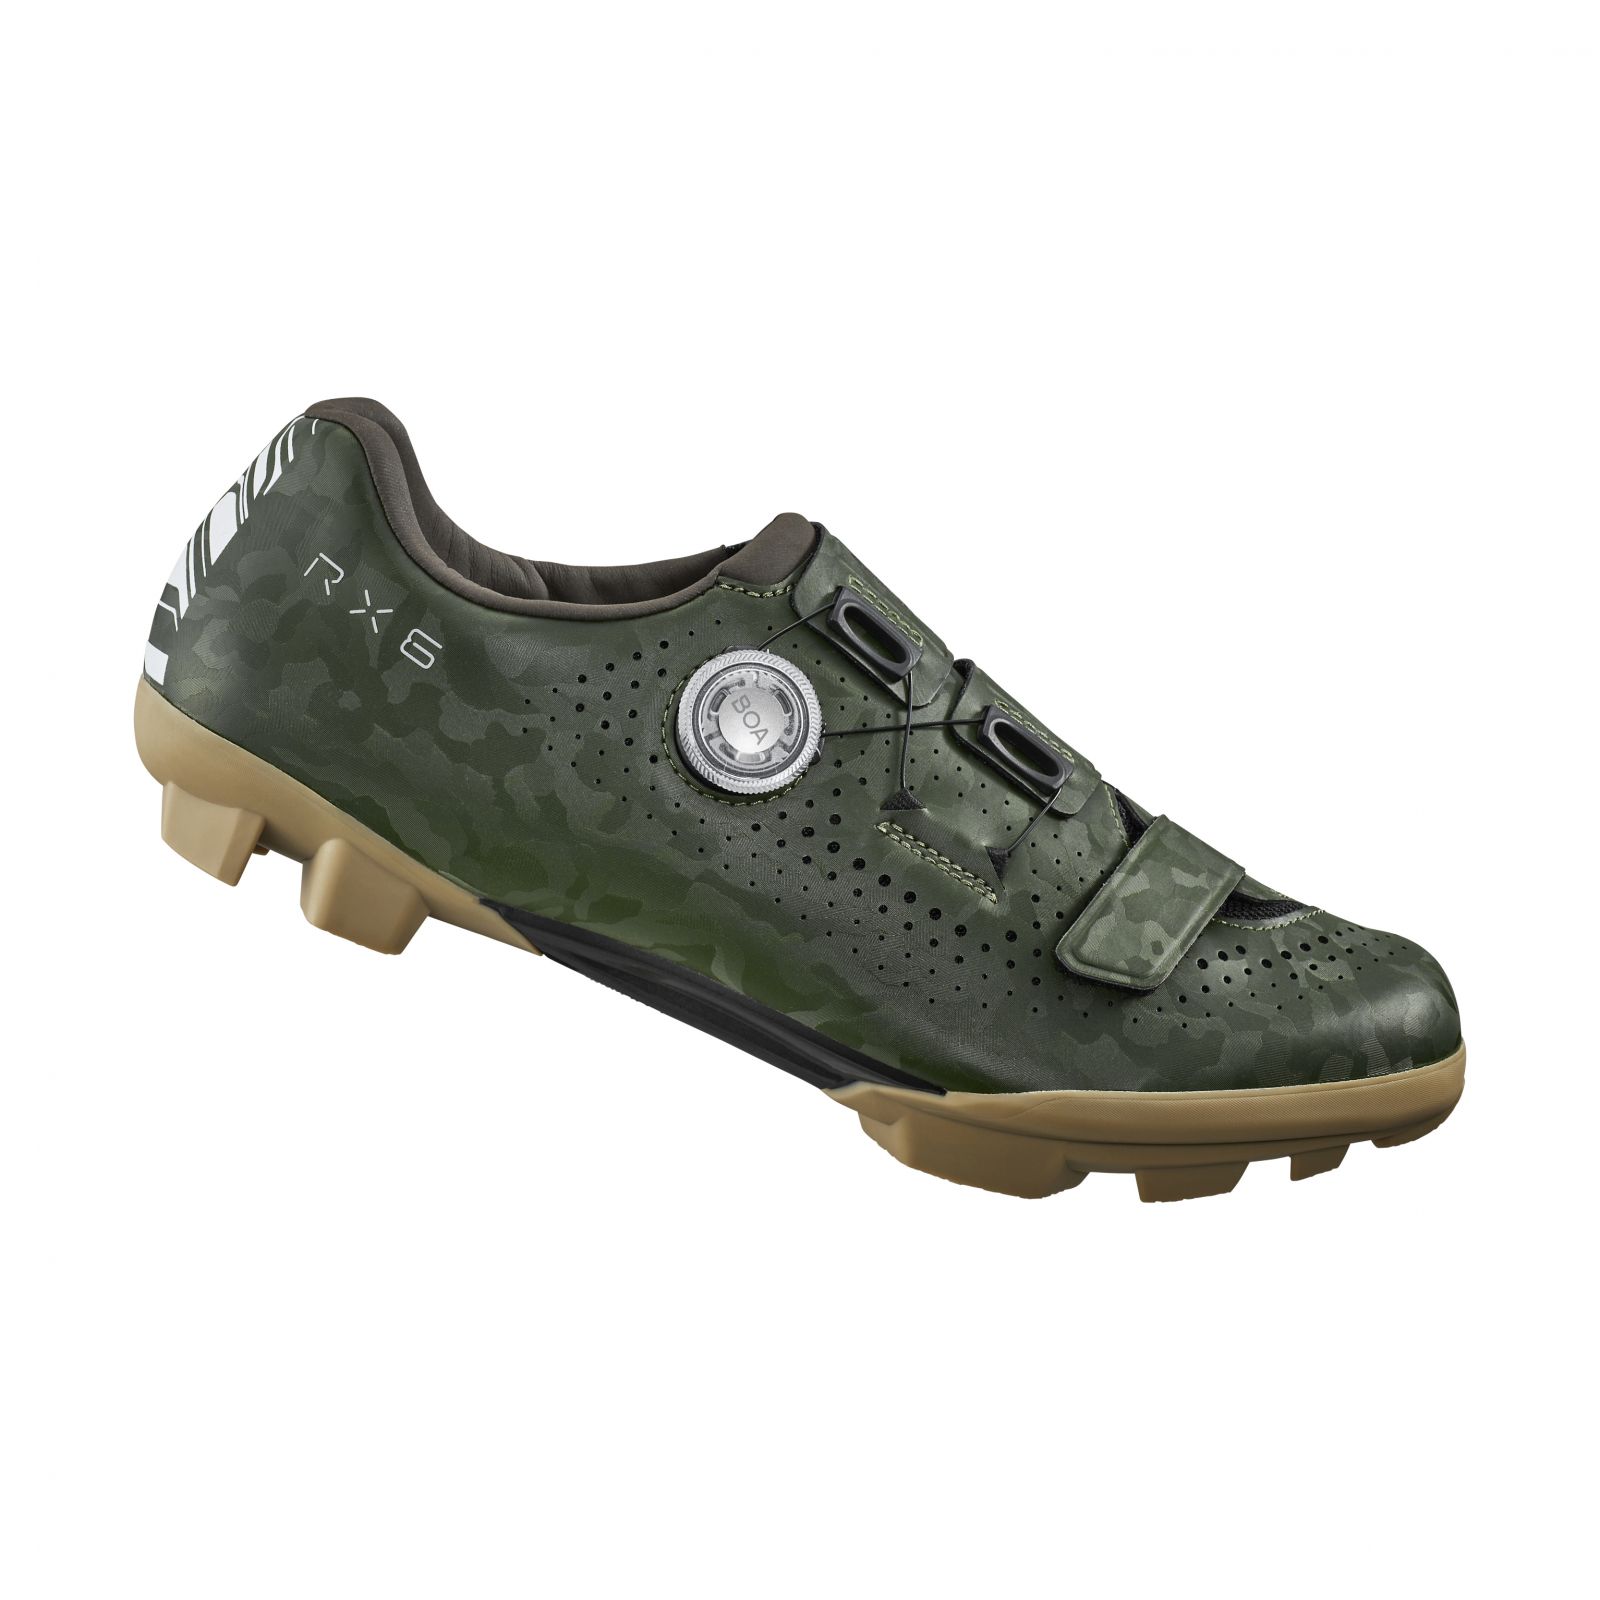 SHIMANO gravel obuv SH-RX600, pánská, zelená, 49